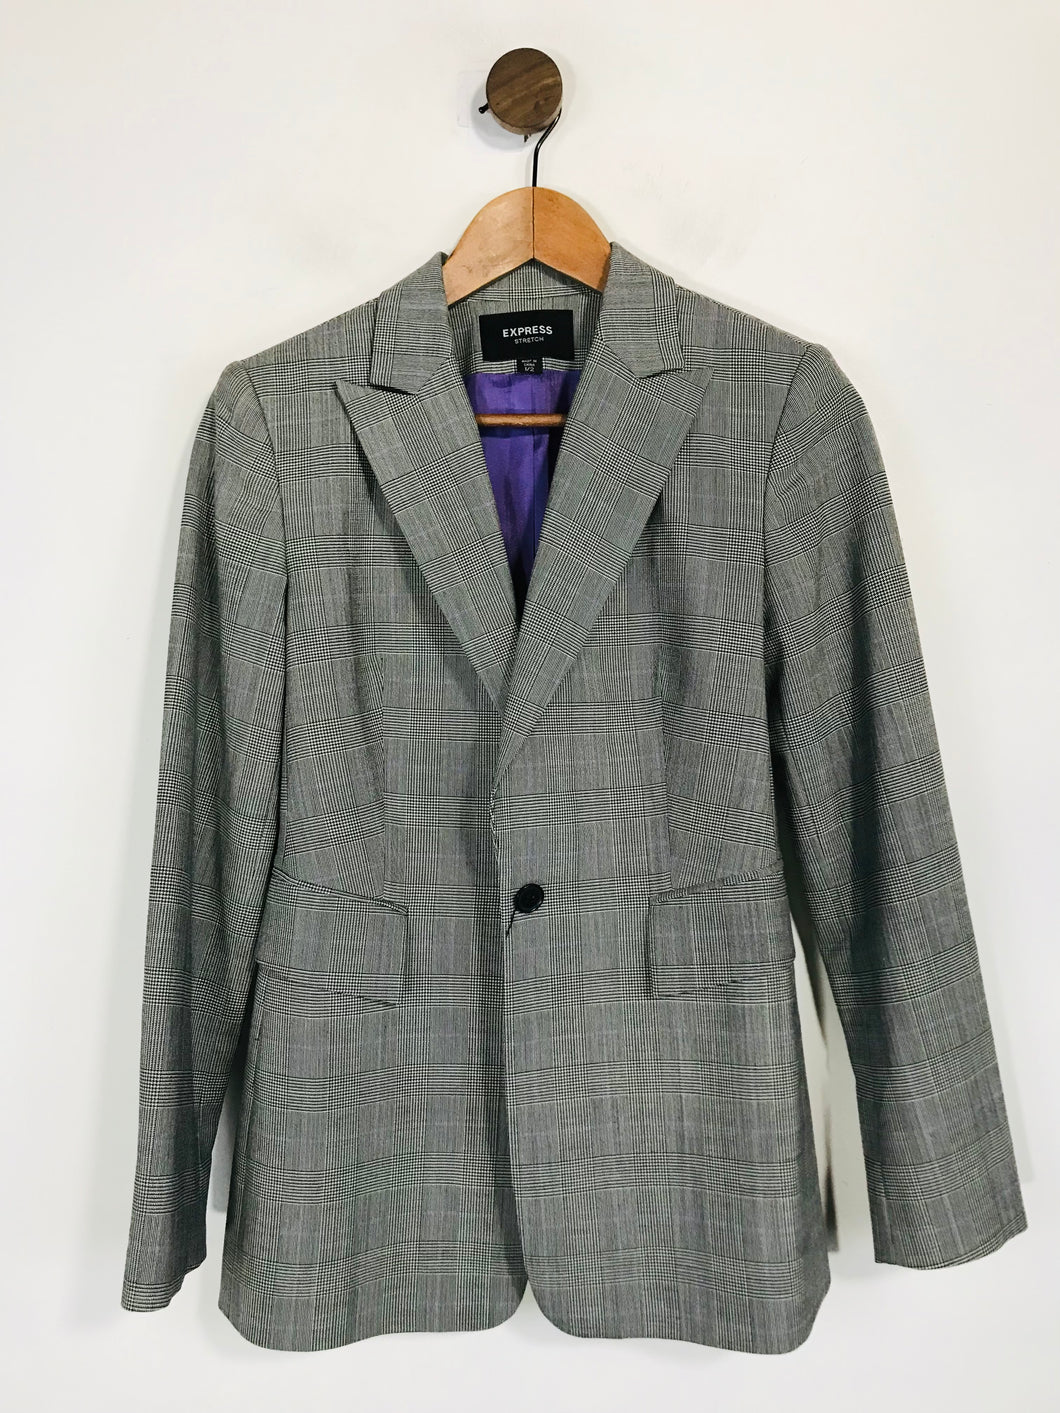 Express Women's Wool Check Gingham Blazer Jacket | UK6 | Grey